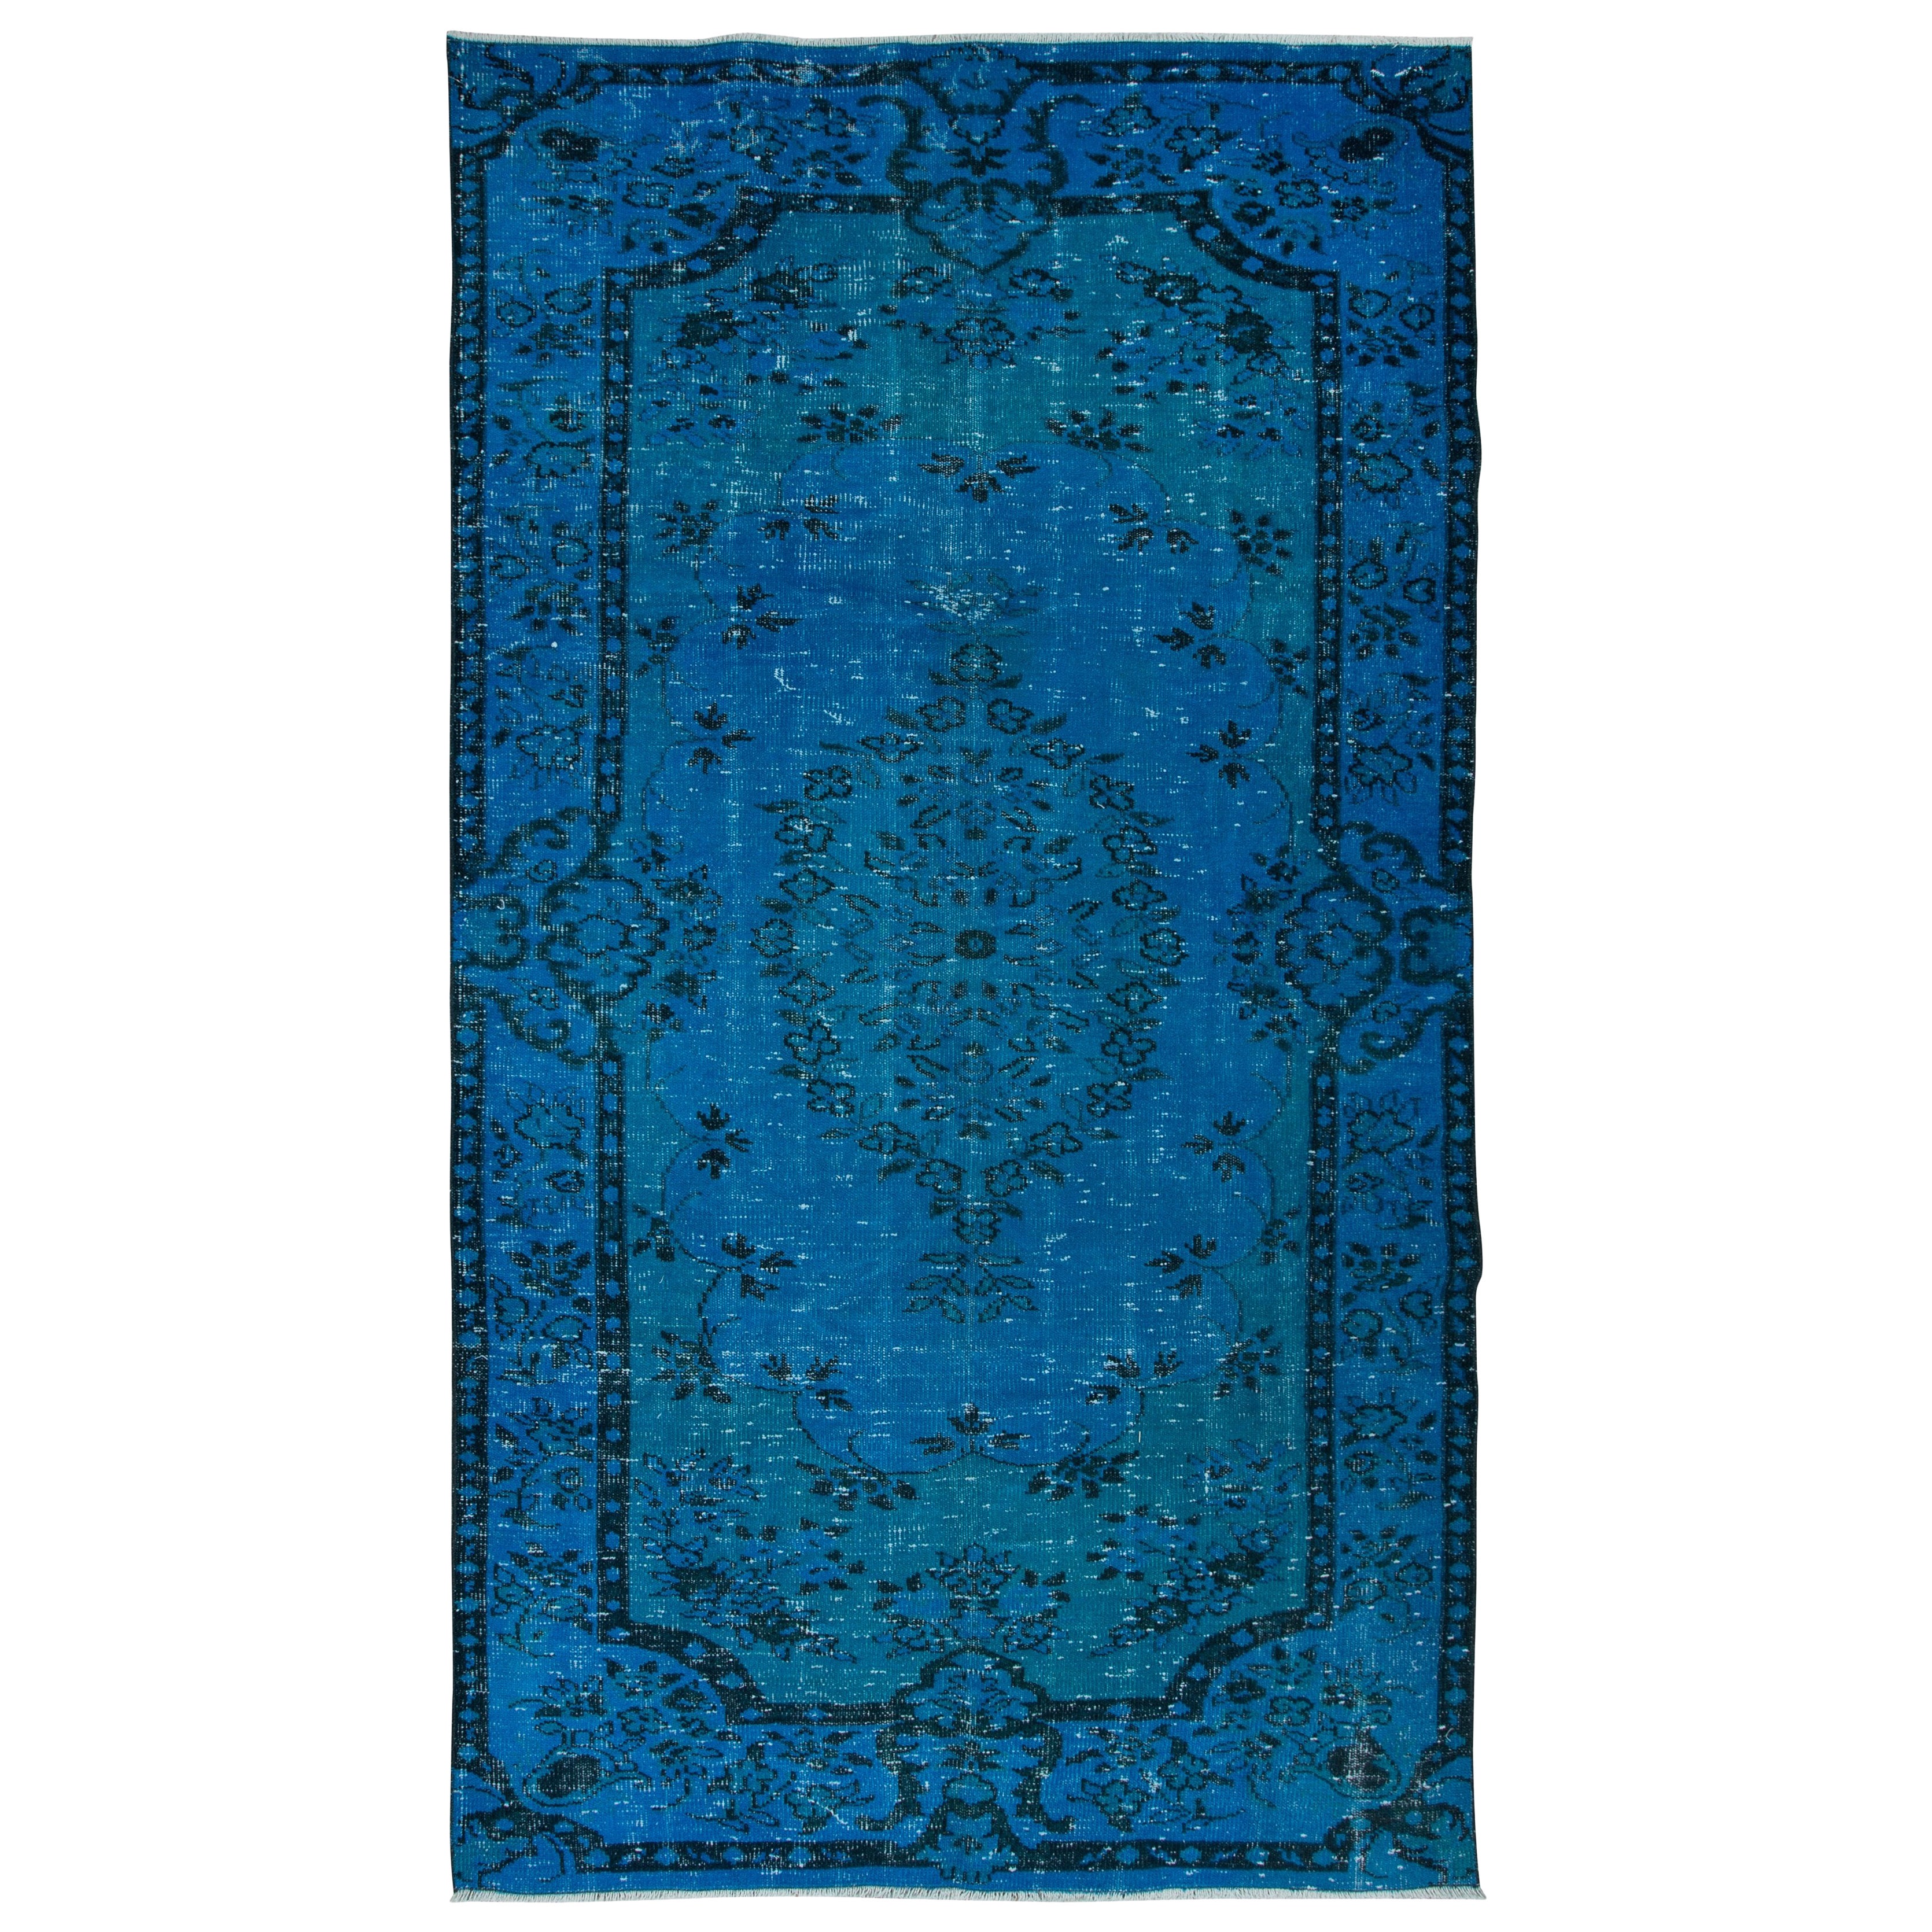 5.3x9.2 Ft Blau Handmade Türkisch Teppich für Wohnzimmer, Schlafzimmer, Esszimmer